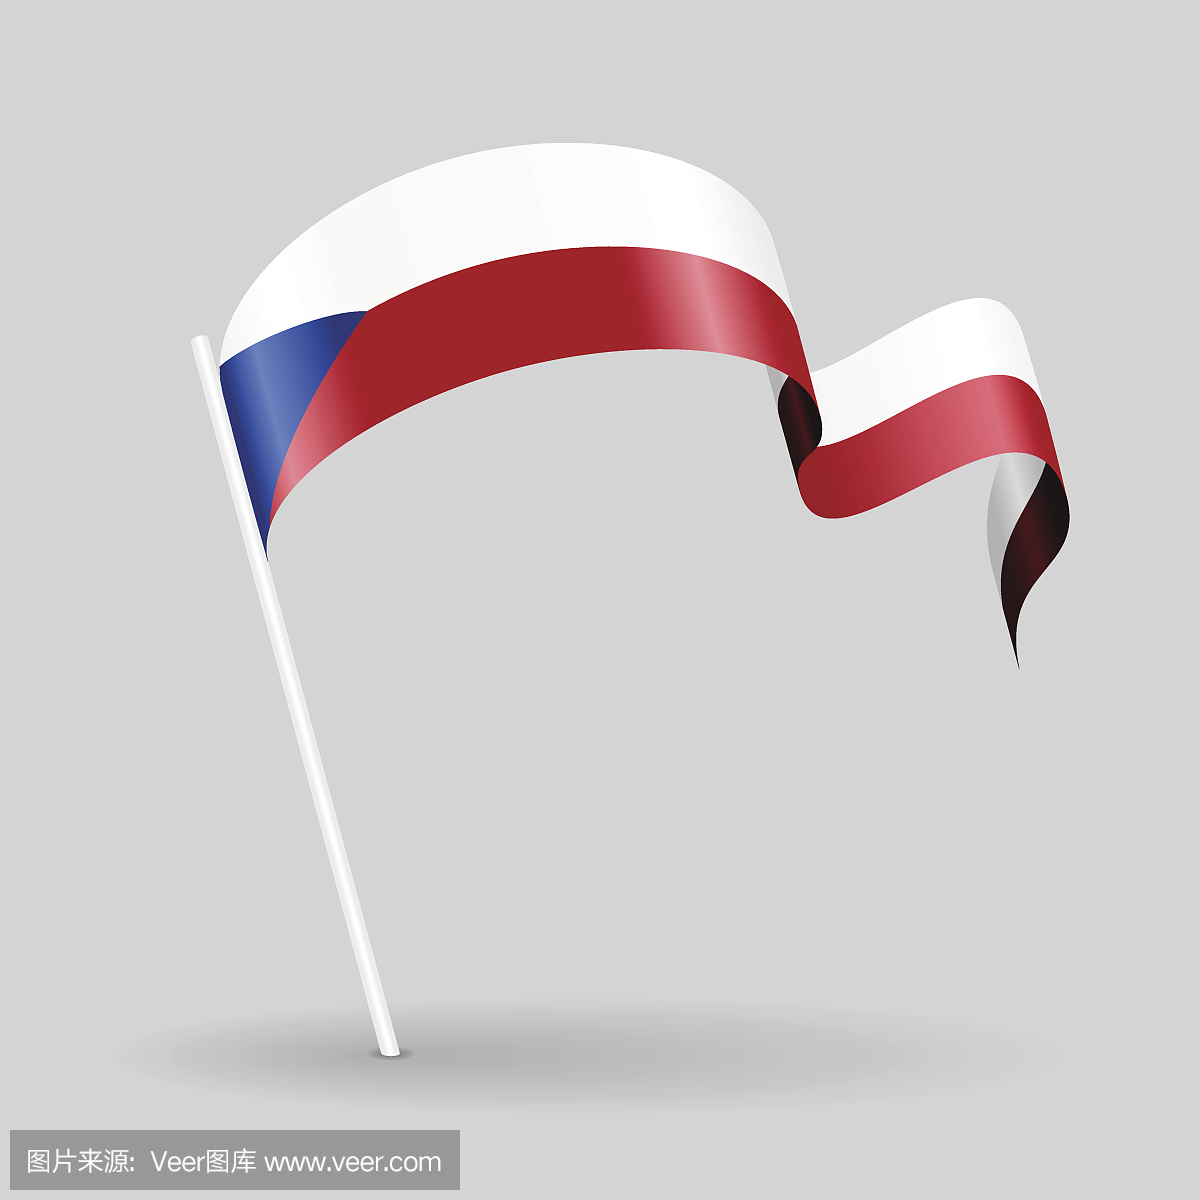 捷克国旗,捷克斯洛伐克国,捷克斯洛伐克国旗,捷